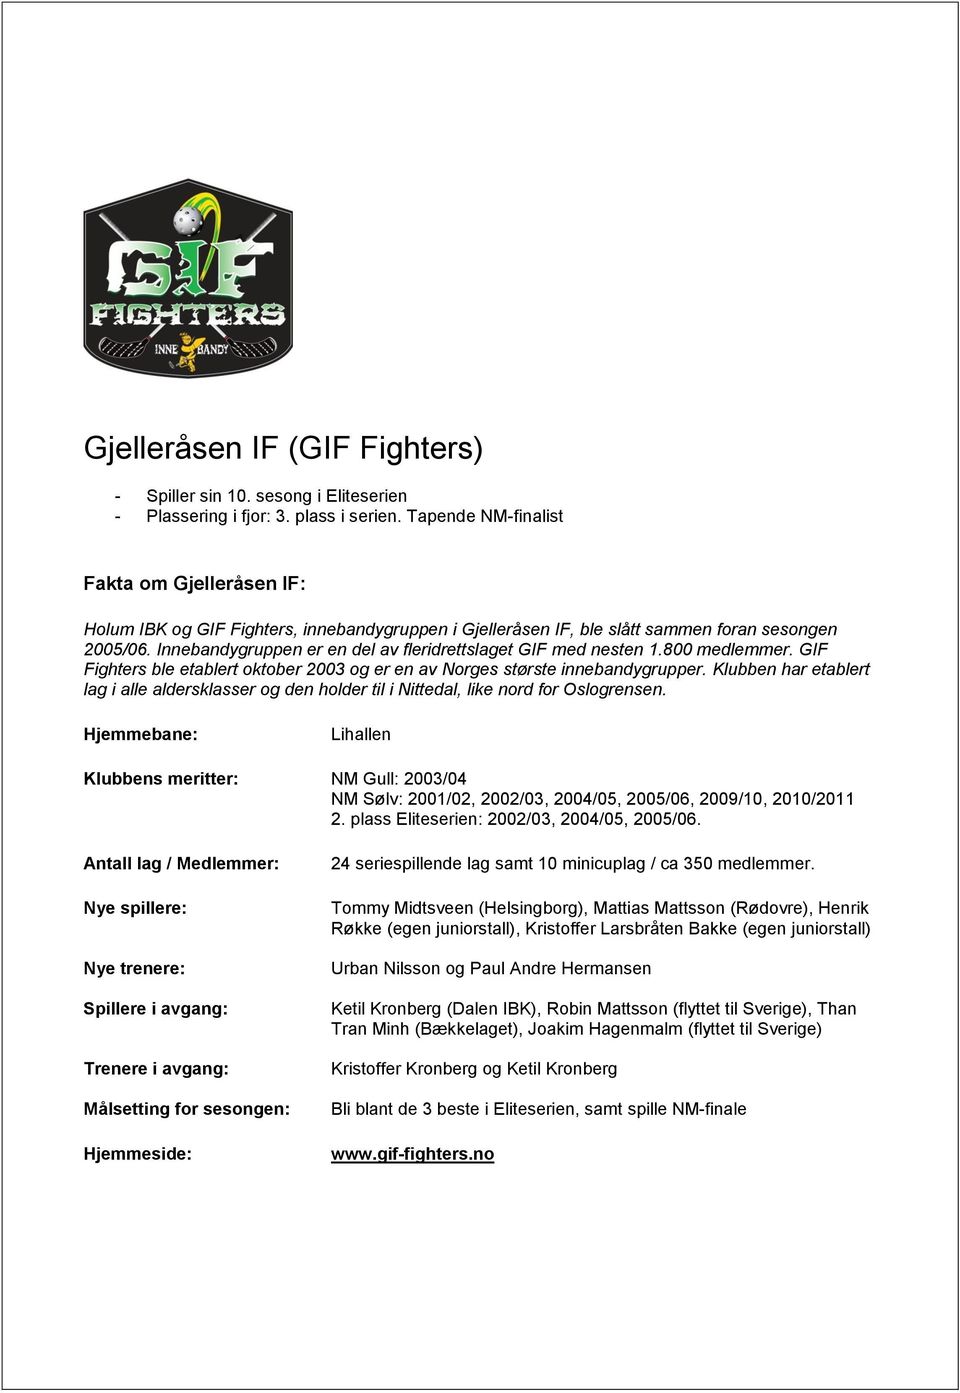 Innebandygruppen er en del av fleridrettslaget GIF med nesten 1.800 medlemmer. GIF Fighters ble etablert oktober 2003 og er en av Norges største innebandygrupper.